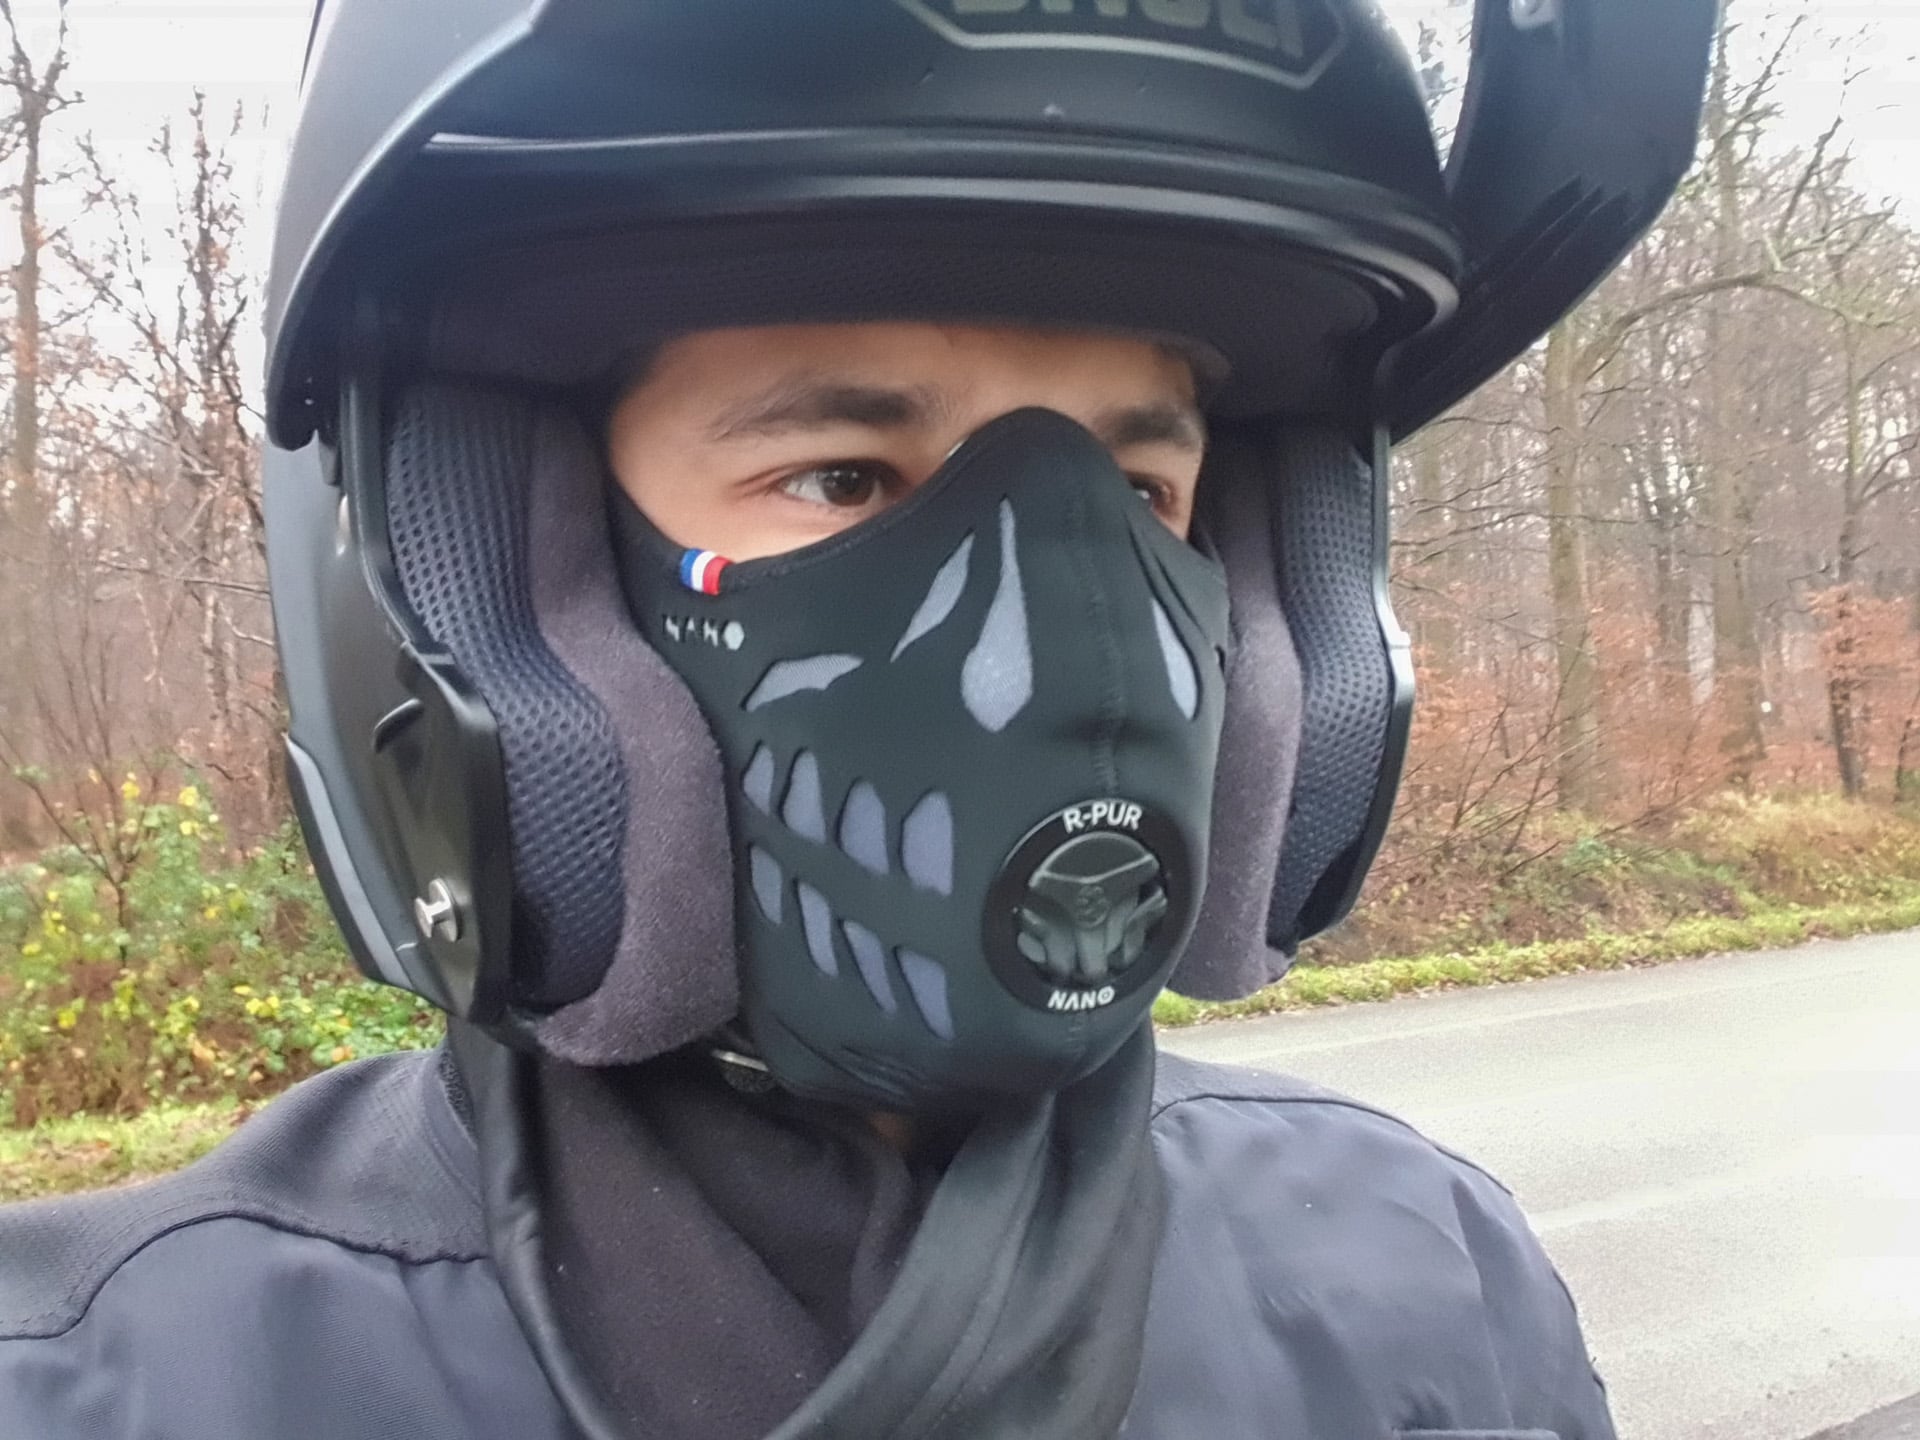 CODE PROMO] R-PUR Nano - Mon Avis sur ce Masque Anti Pollution